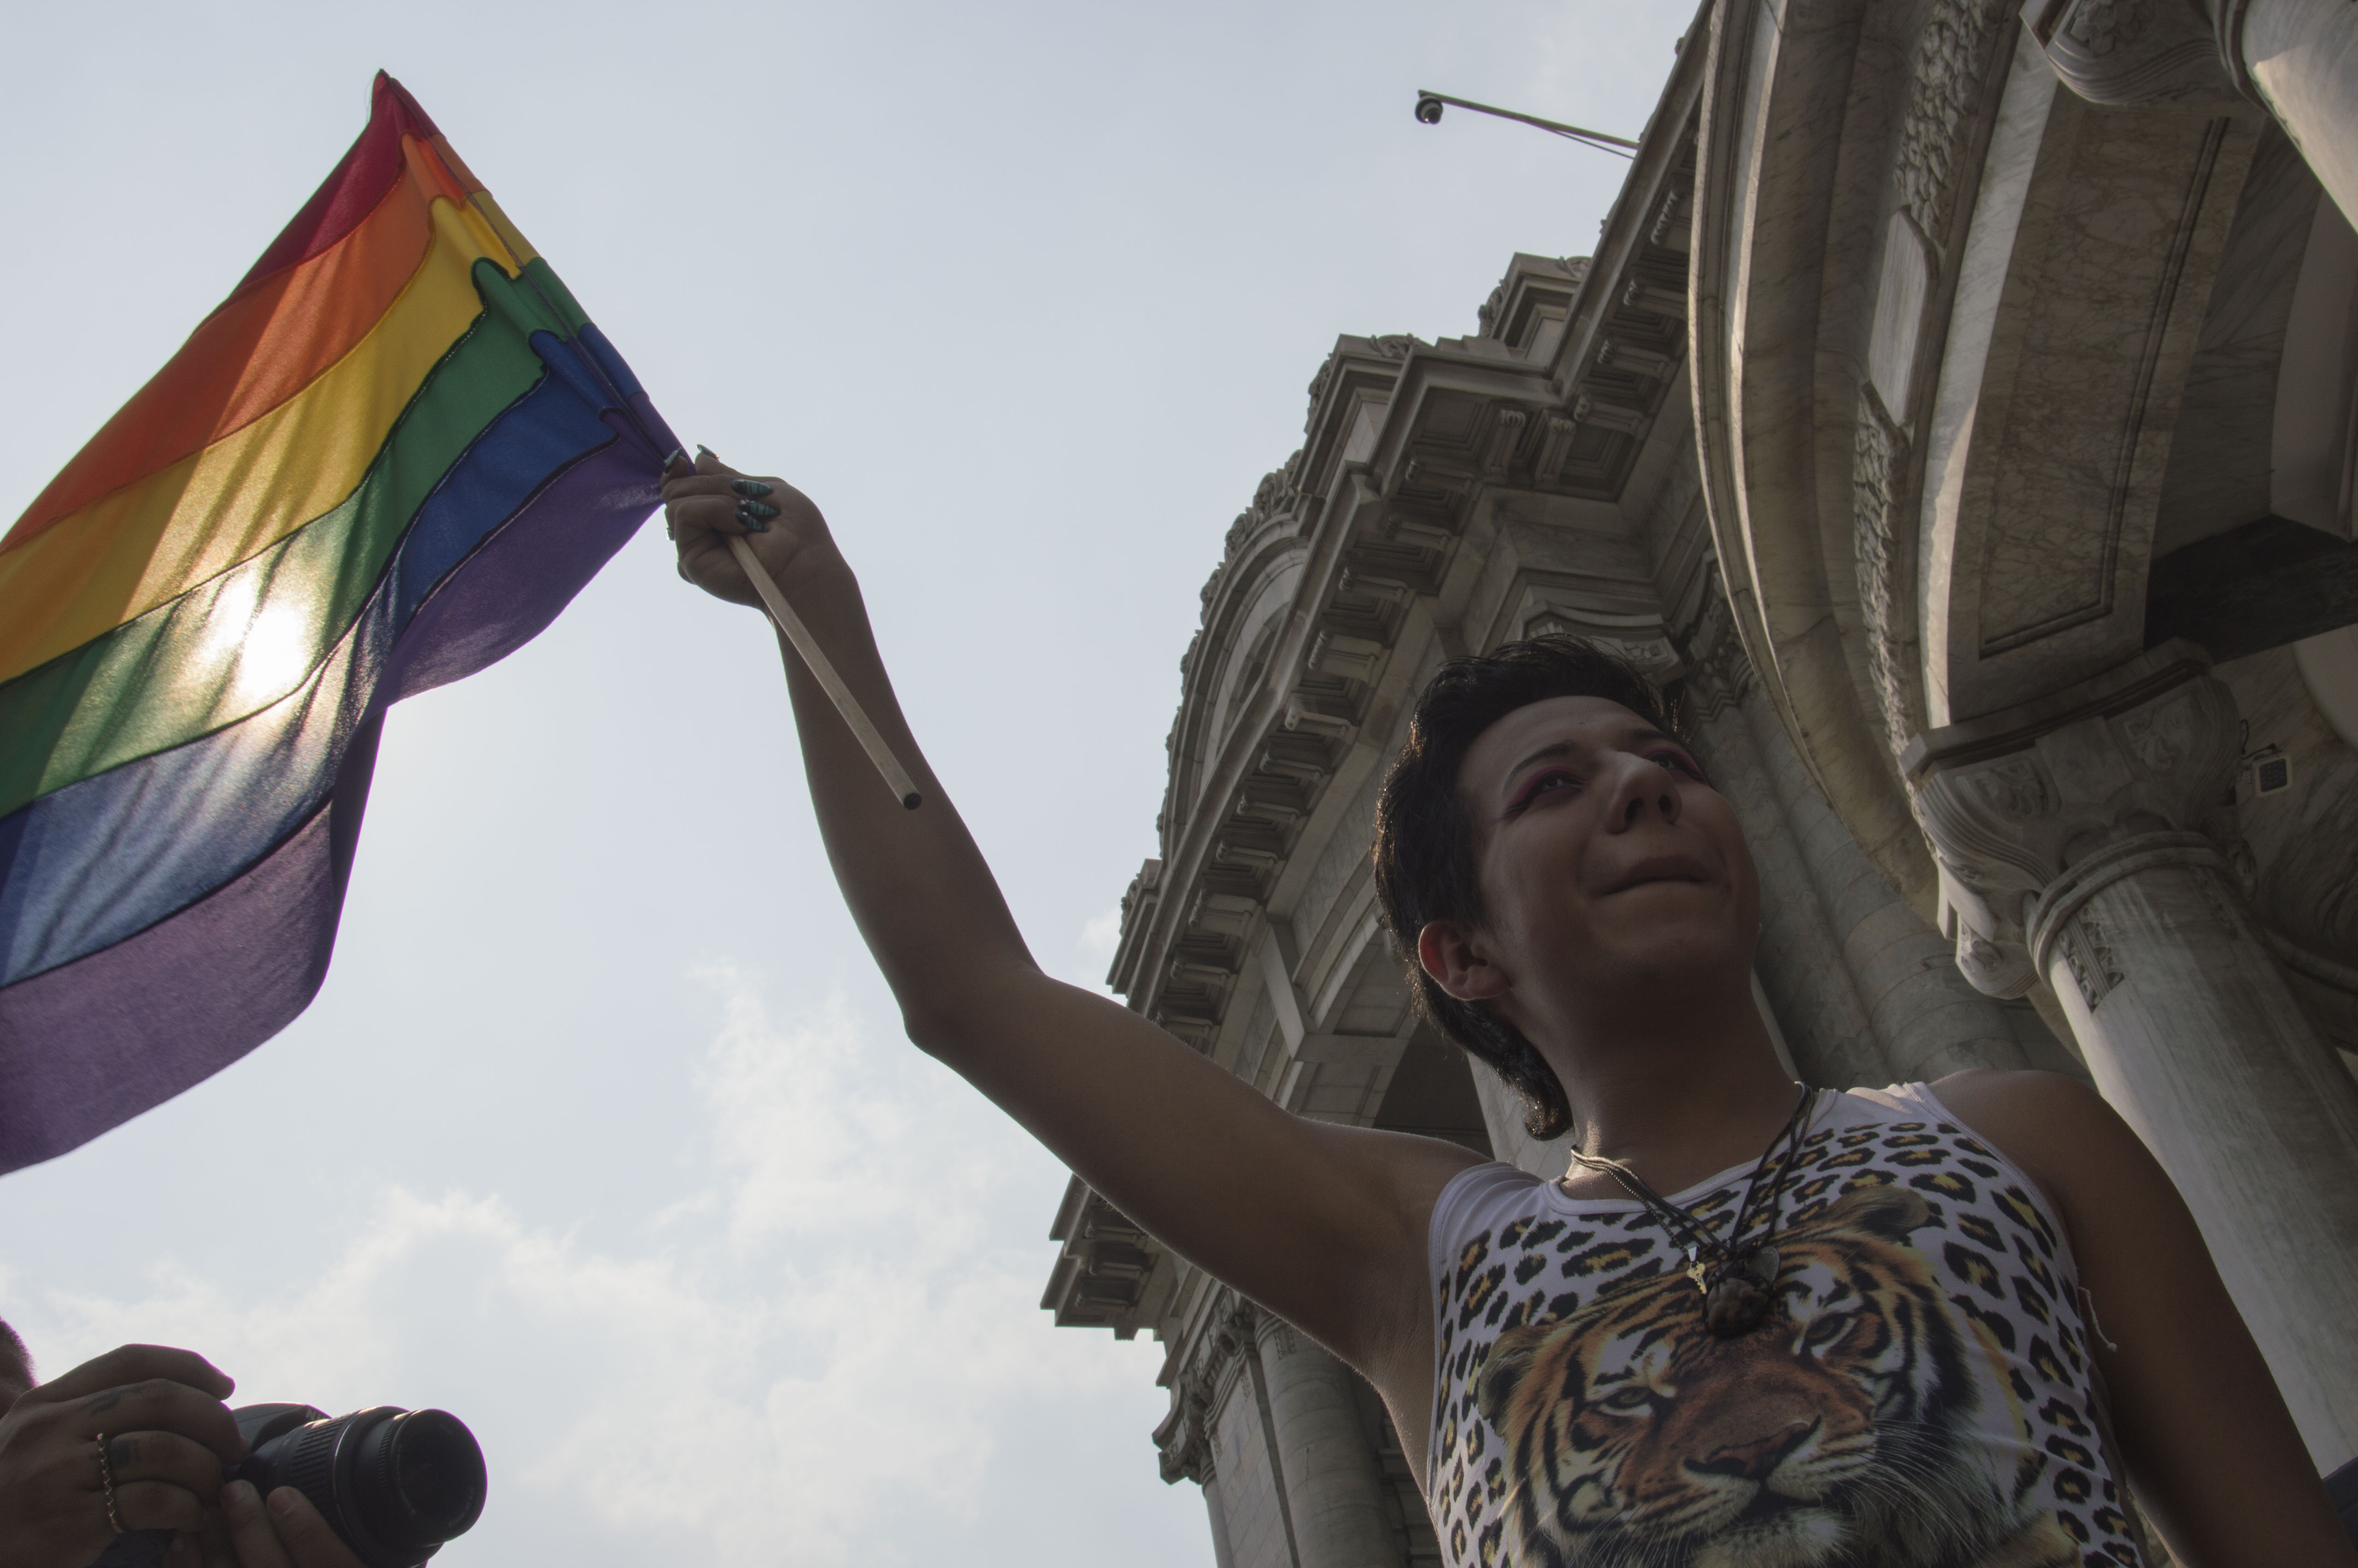  Pese a iniciativas, México sigue siendo un país homofóbico